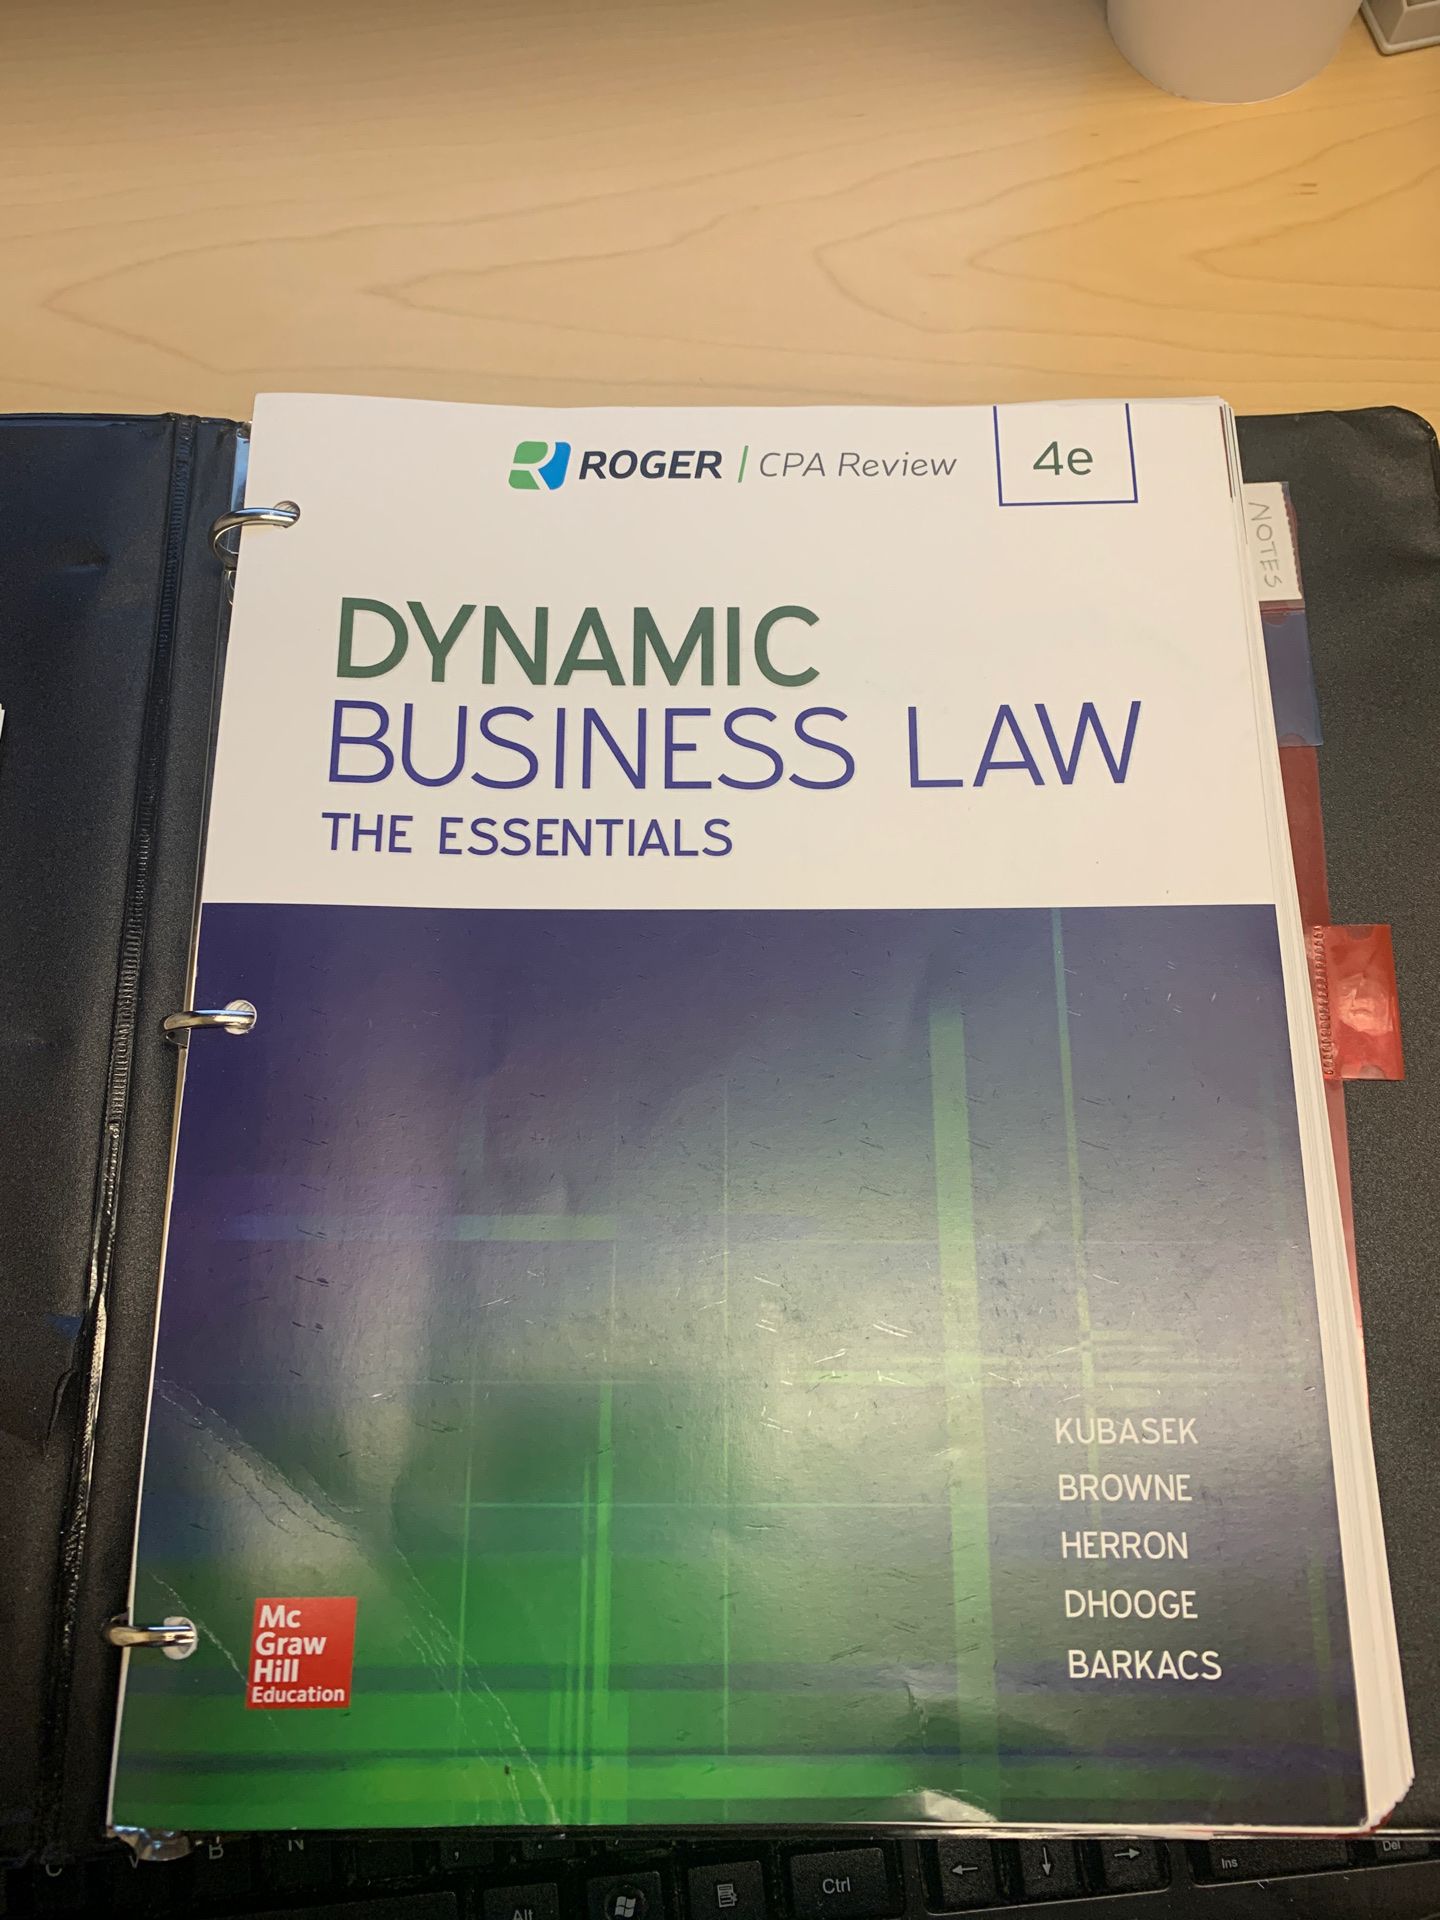 Dynamic Business Law by Kubasek